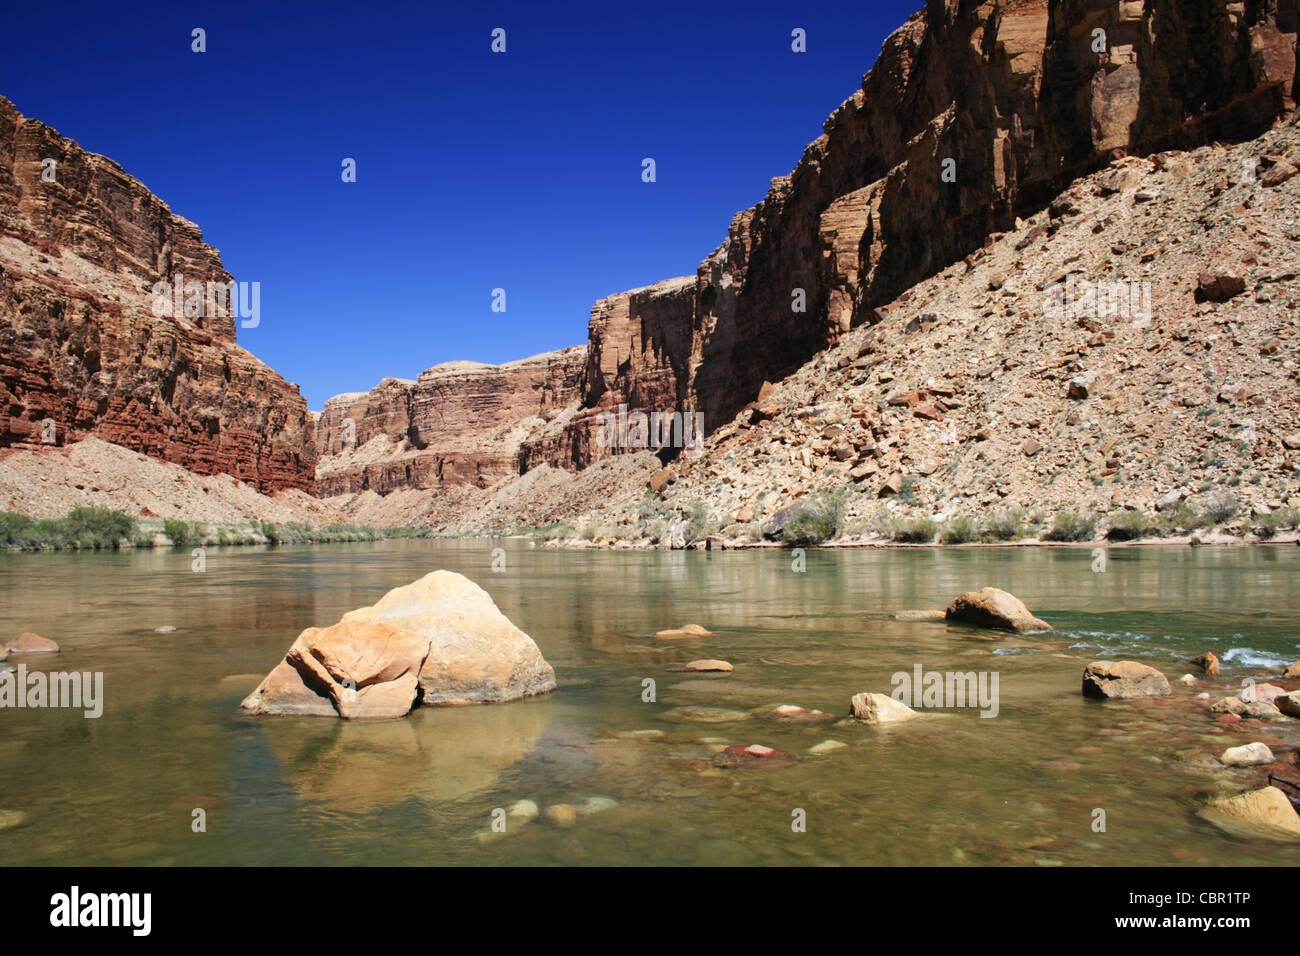 the Colorado River flows through Marble Canyon Stock Photo